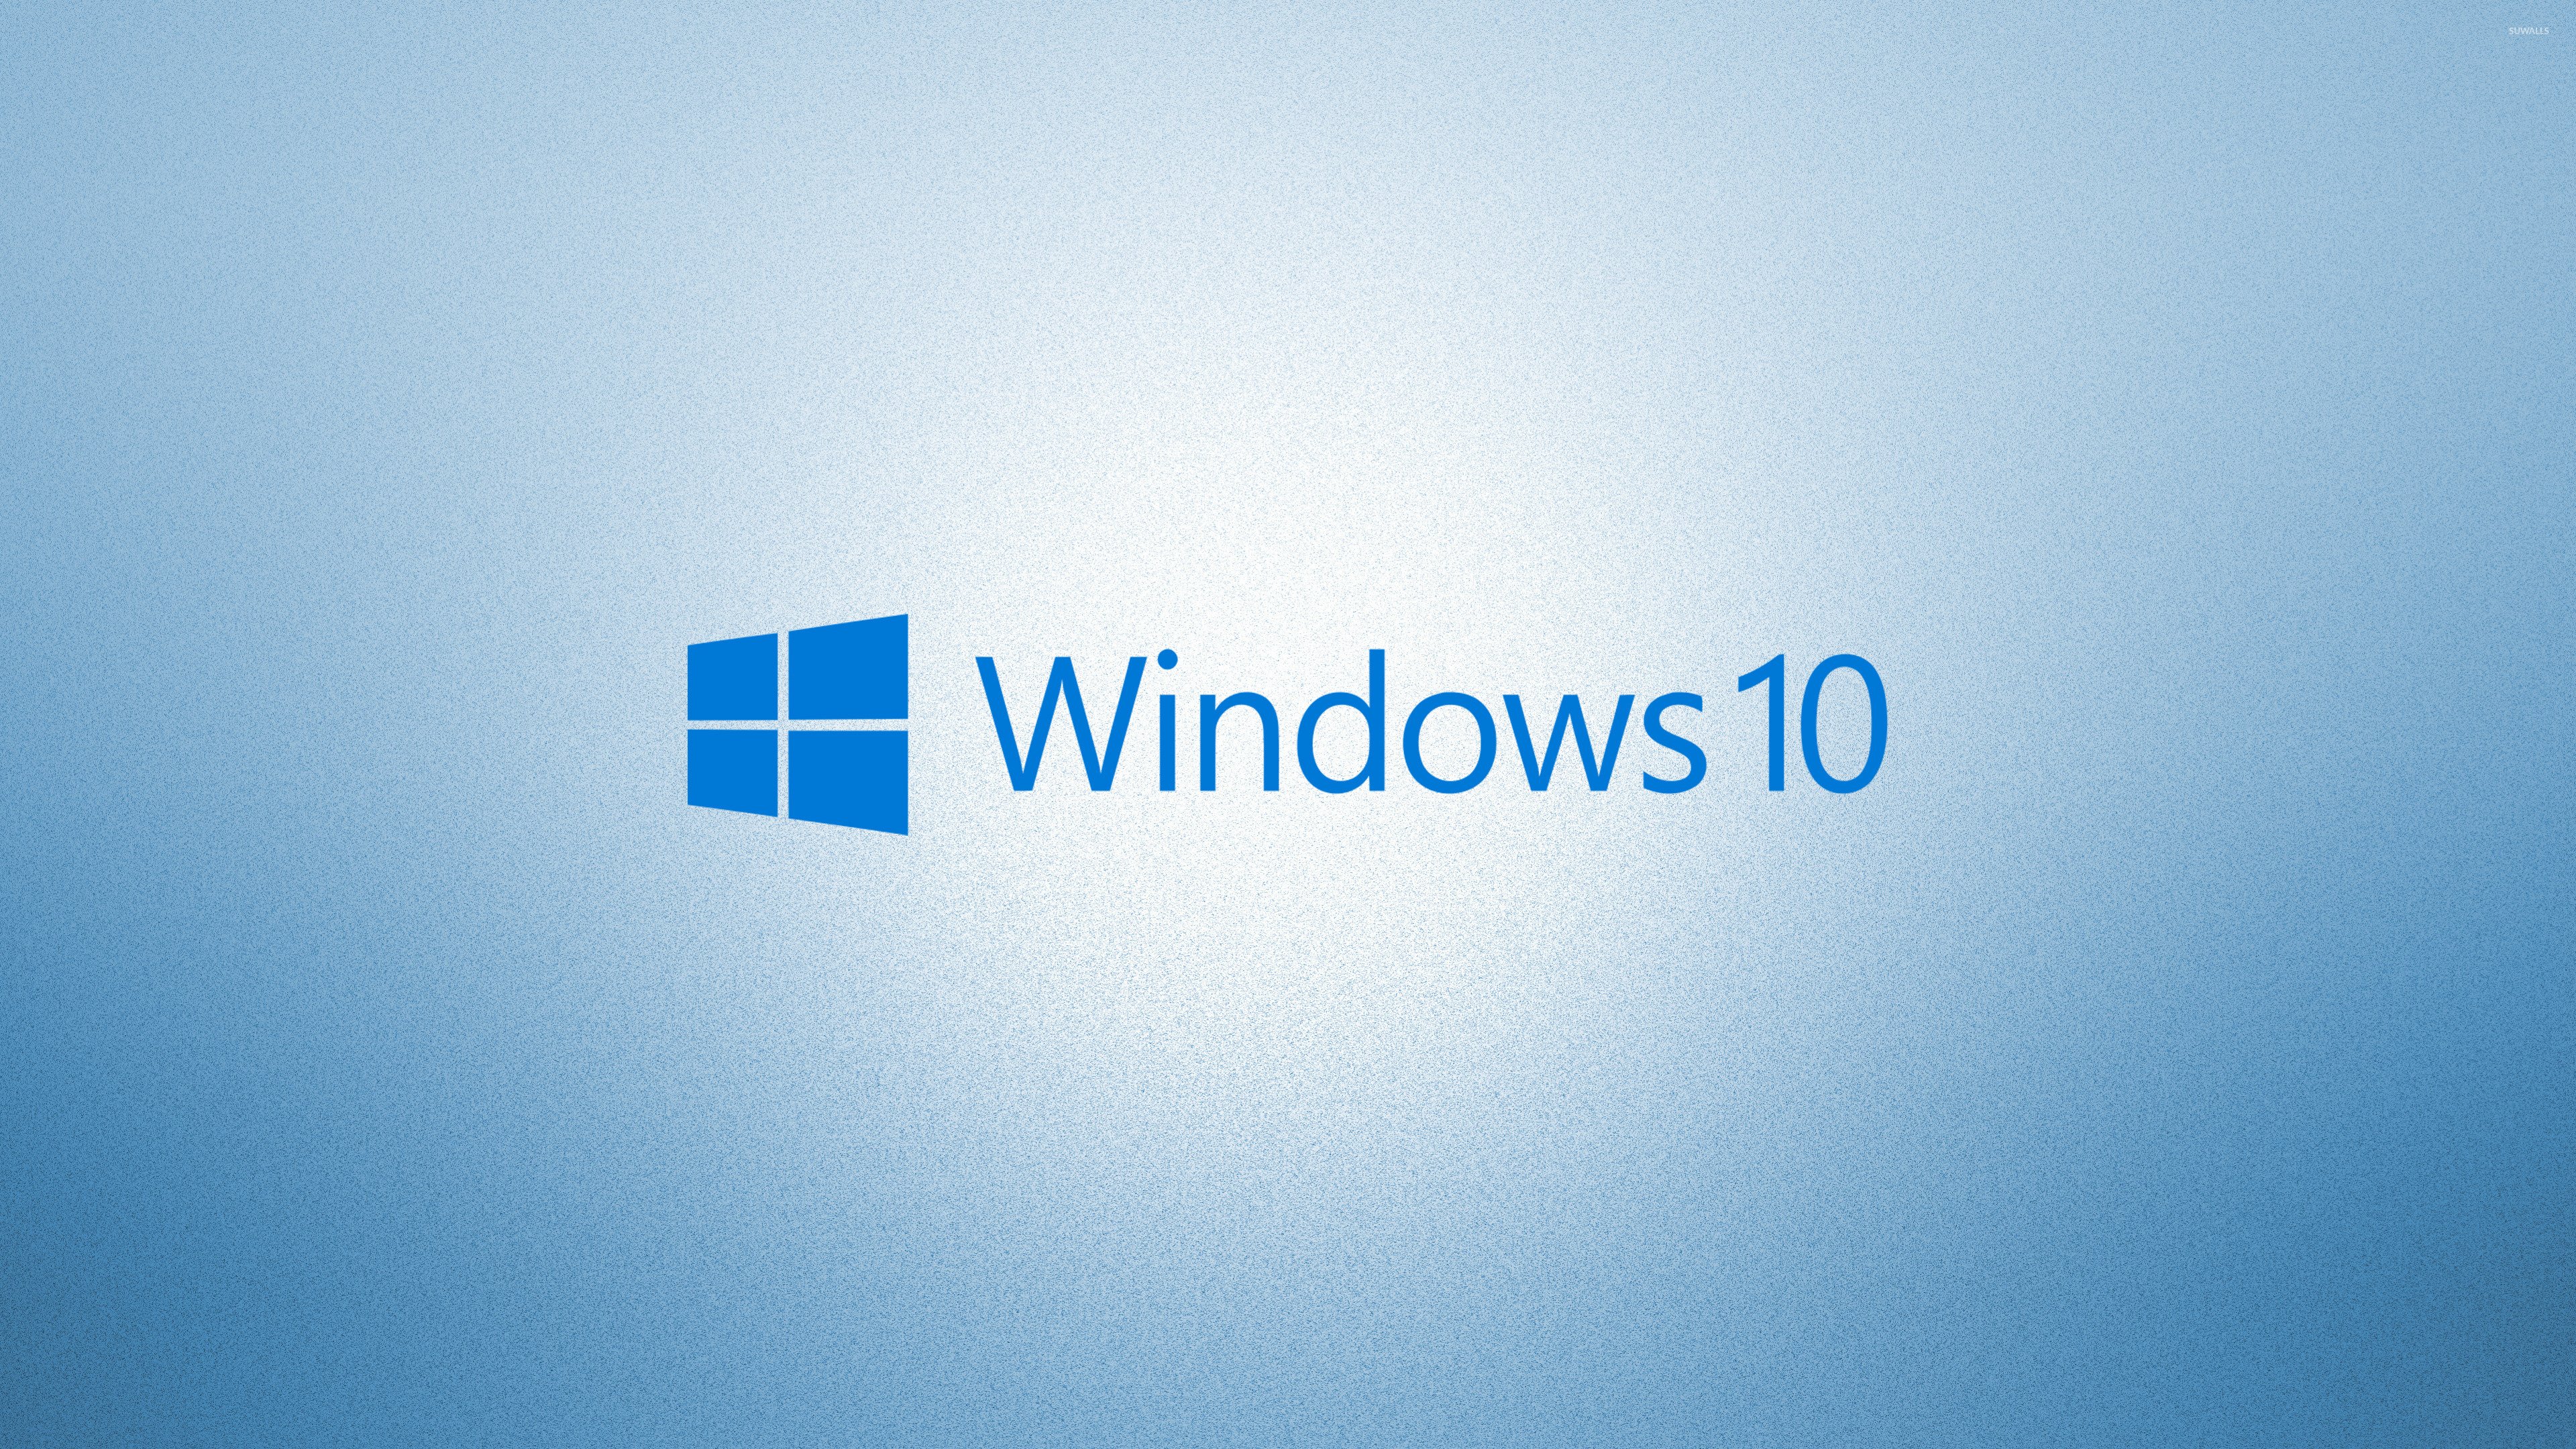 Windows 10 blue text logoon light blue wallpaper wallpaper